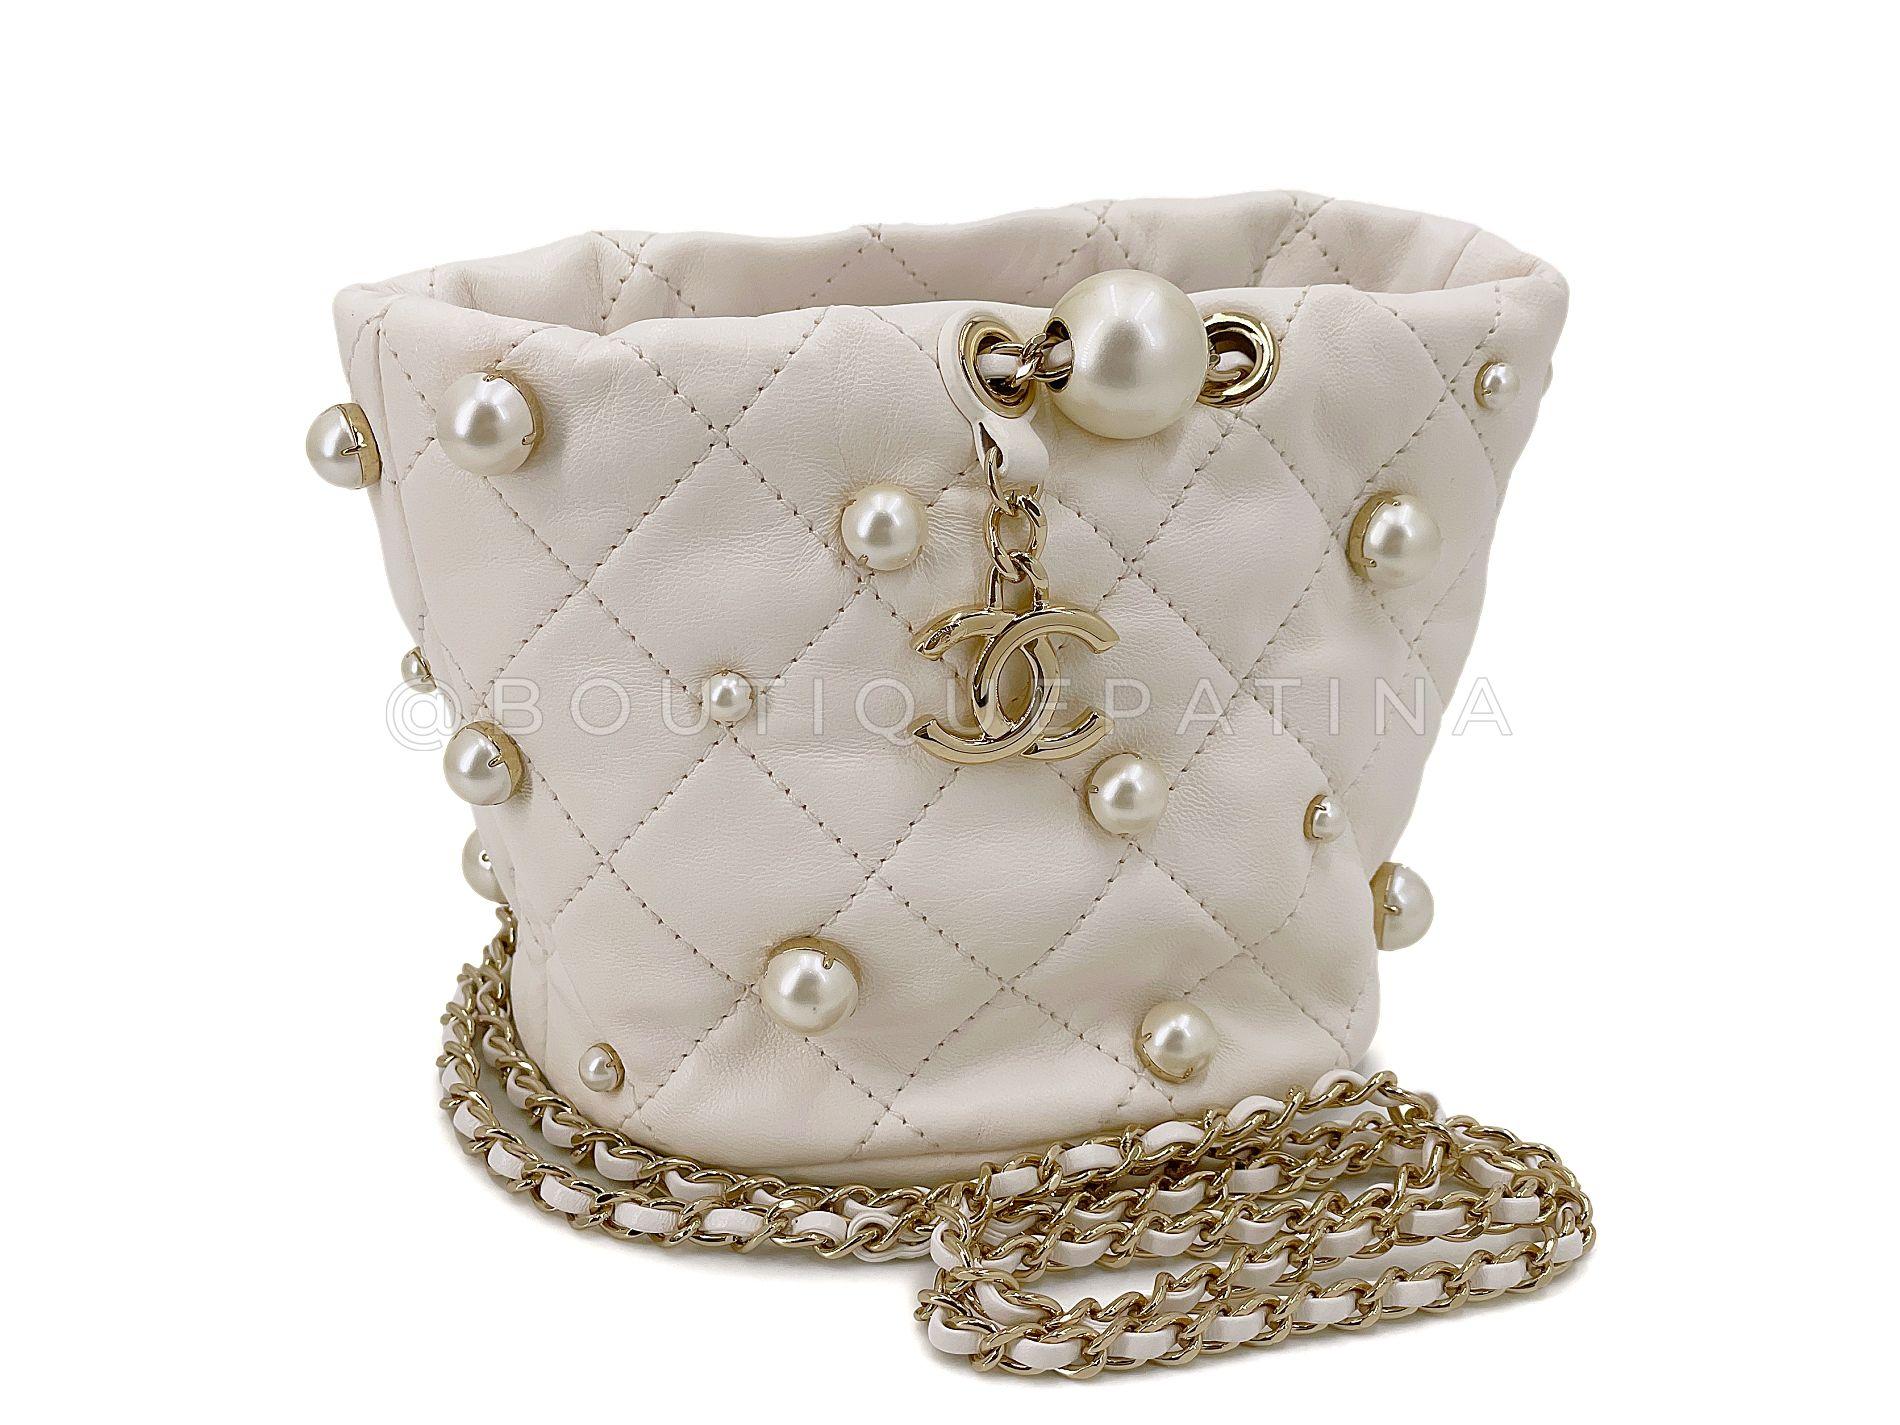 Article de magasin : 67973
Chanel 21S White Cream About Pearls Bucket Bag Mini  est un sac seau miniature doux comme de l'eau de roche, orné de fausses perles à picots dorés et de breloques CC pendantes, avec une bandoulière tressée. 

Parfait pour